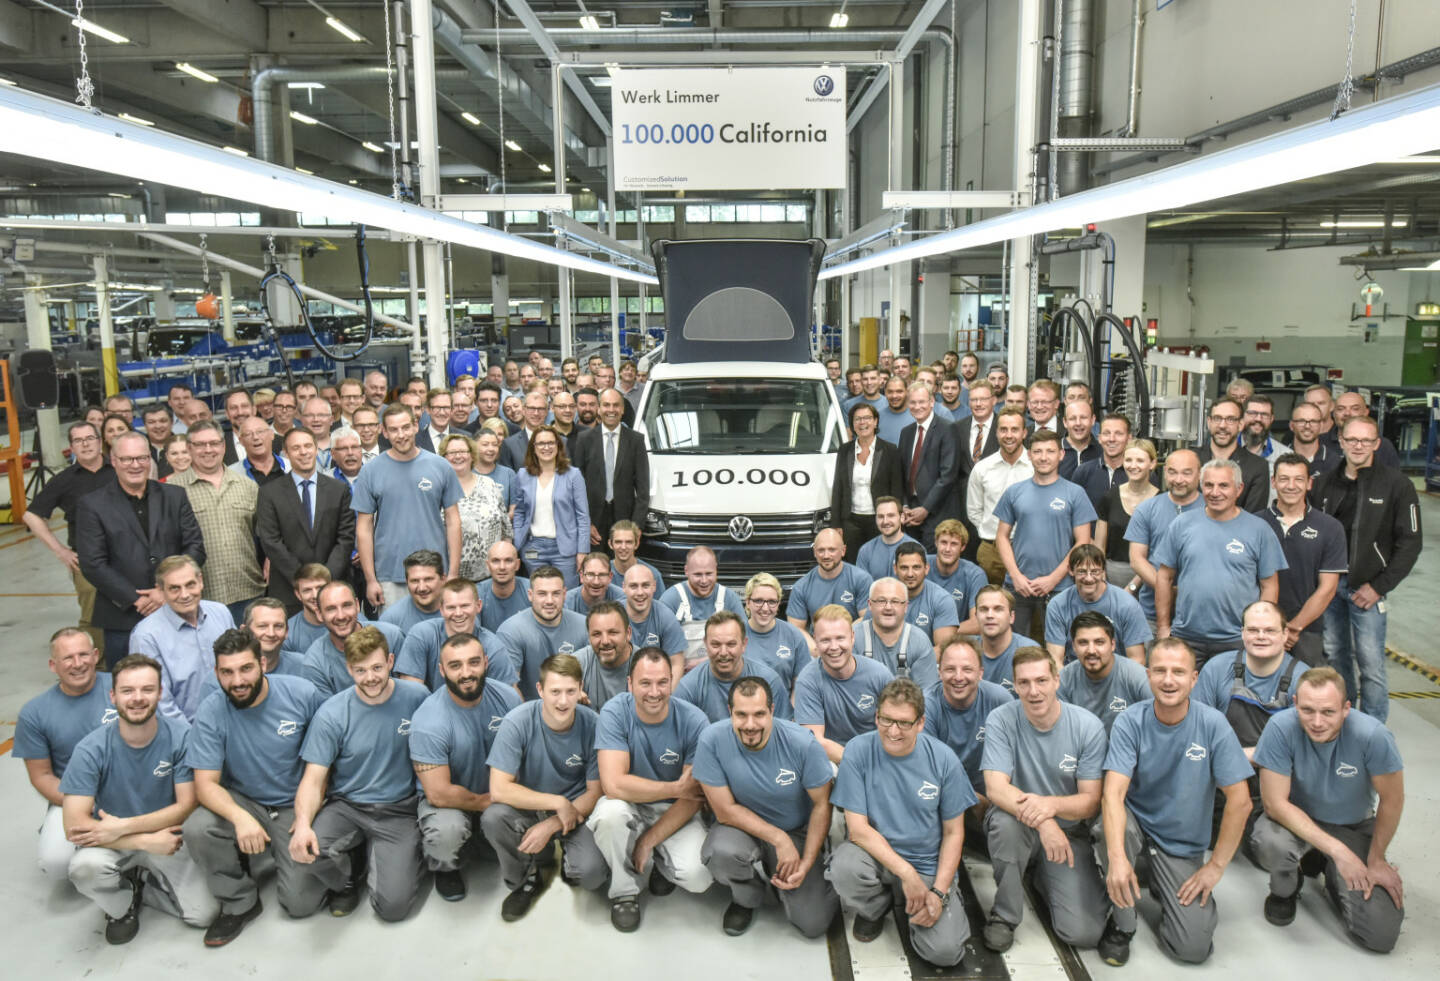 VW Volkswagen Nutzfahrzeuge AG: Gemeinsamer Erfolg: Vorstände, Betriebsräte und Mitarbeiter mit dem 100.000sten California aus dem Werk in Hannover-Limmer; Fotocredit:VW Volkswagen Nutzfahrzeuge AG